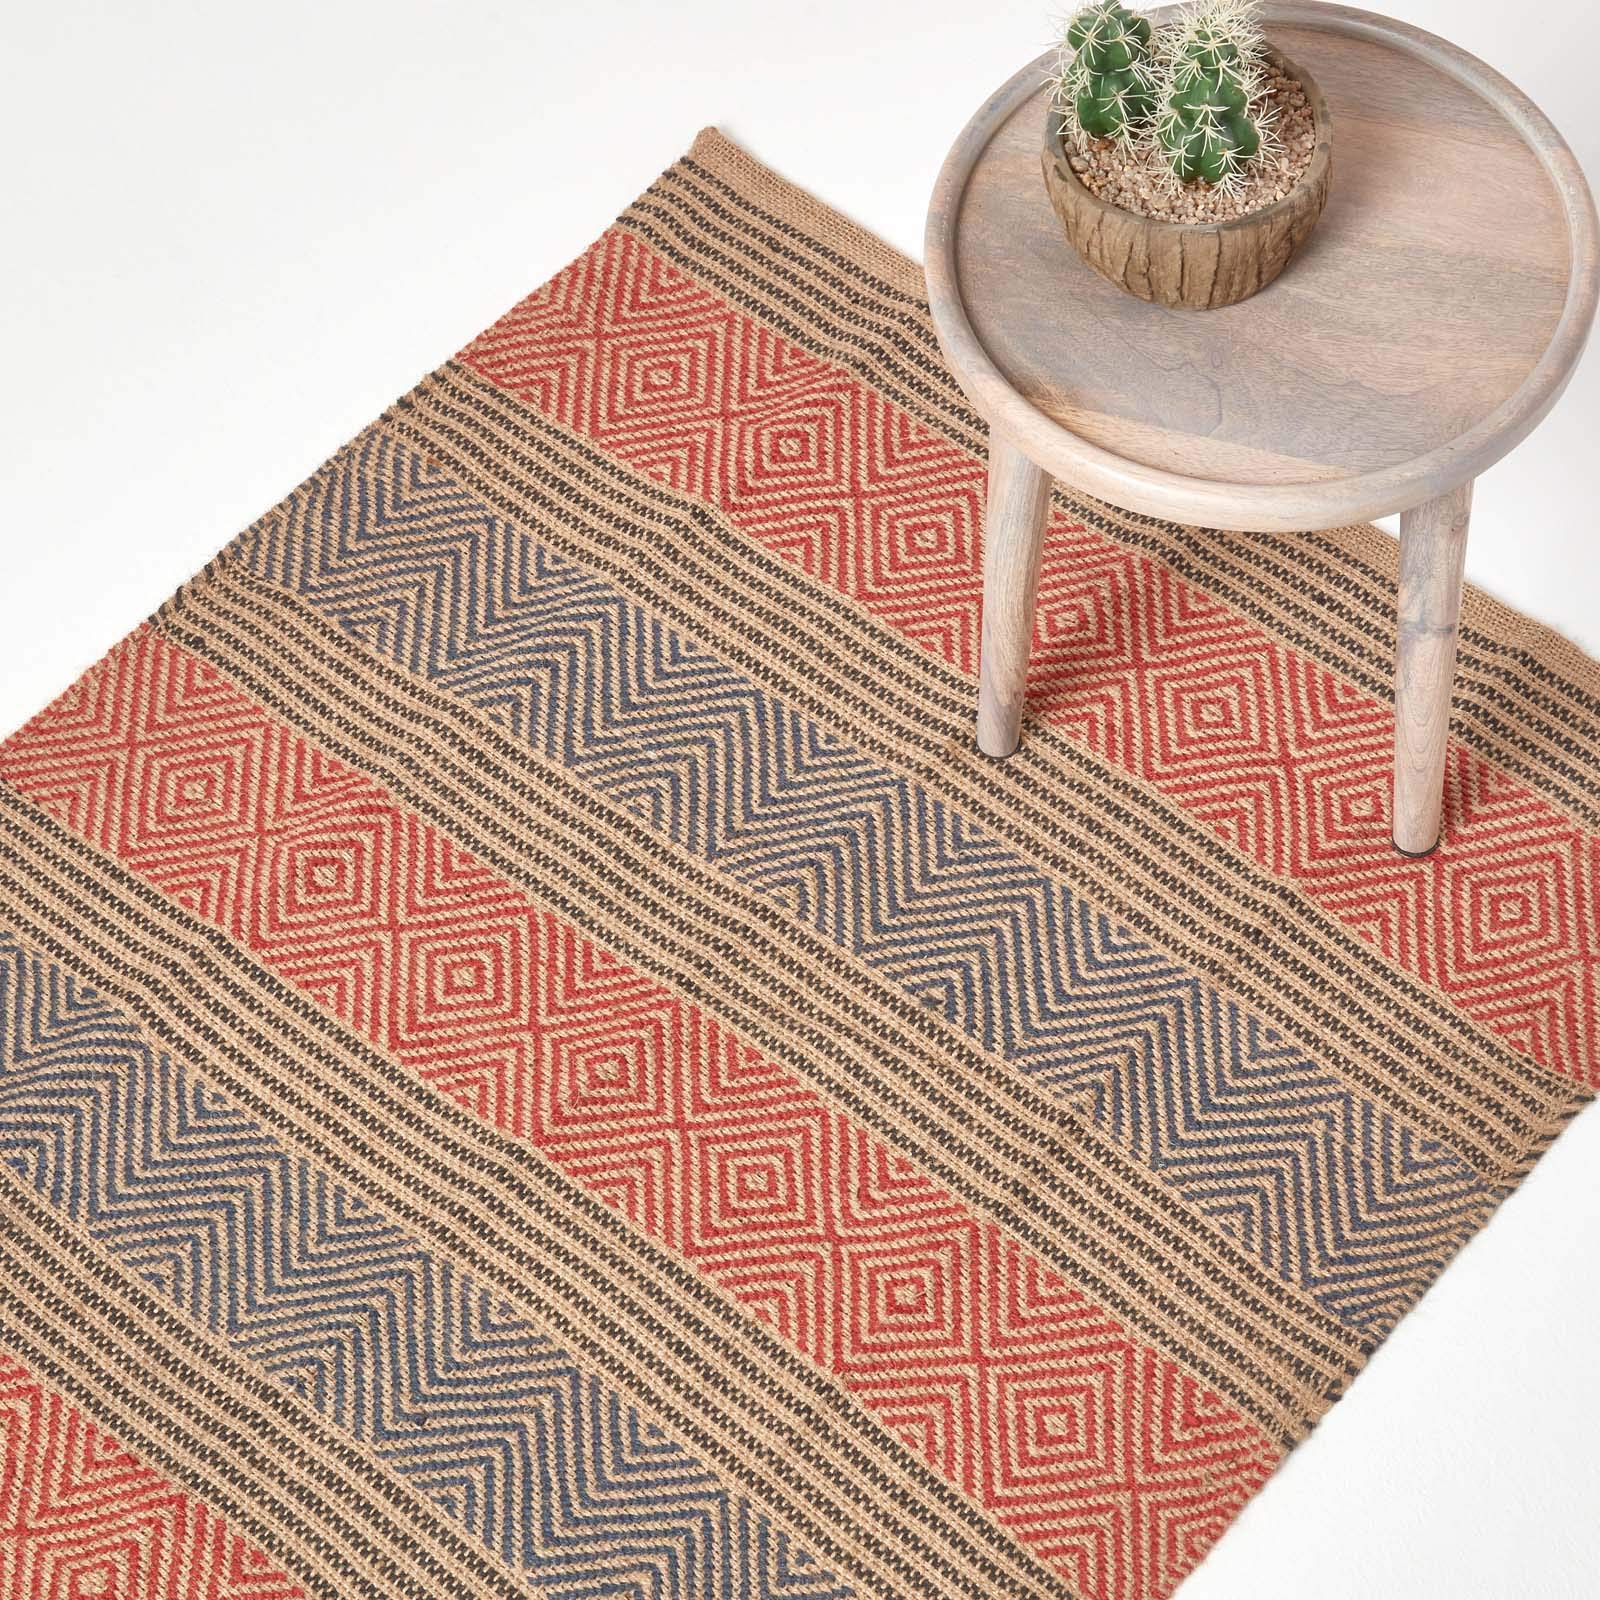 Homescapes Naturfaser-Teppich, 150 x 240 cm, 100% Jute-Teppich mit Streifen und geometrischem Rautenmuster, blau-rot-Natur